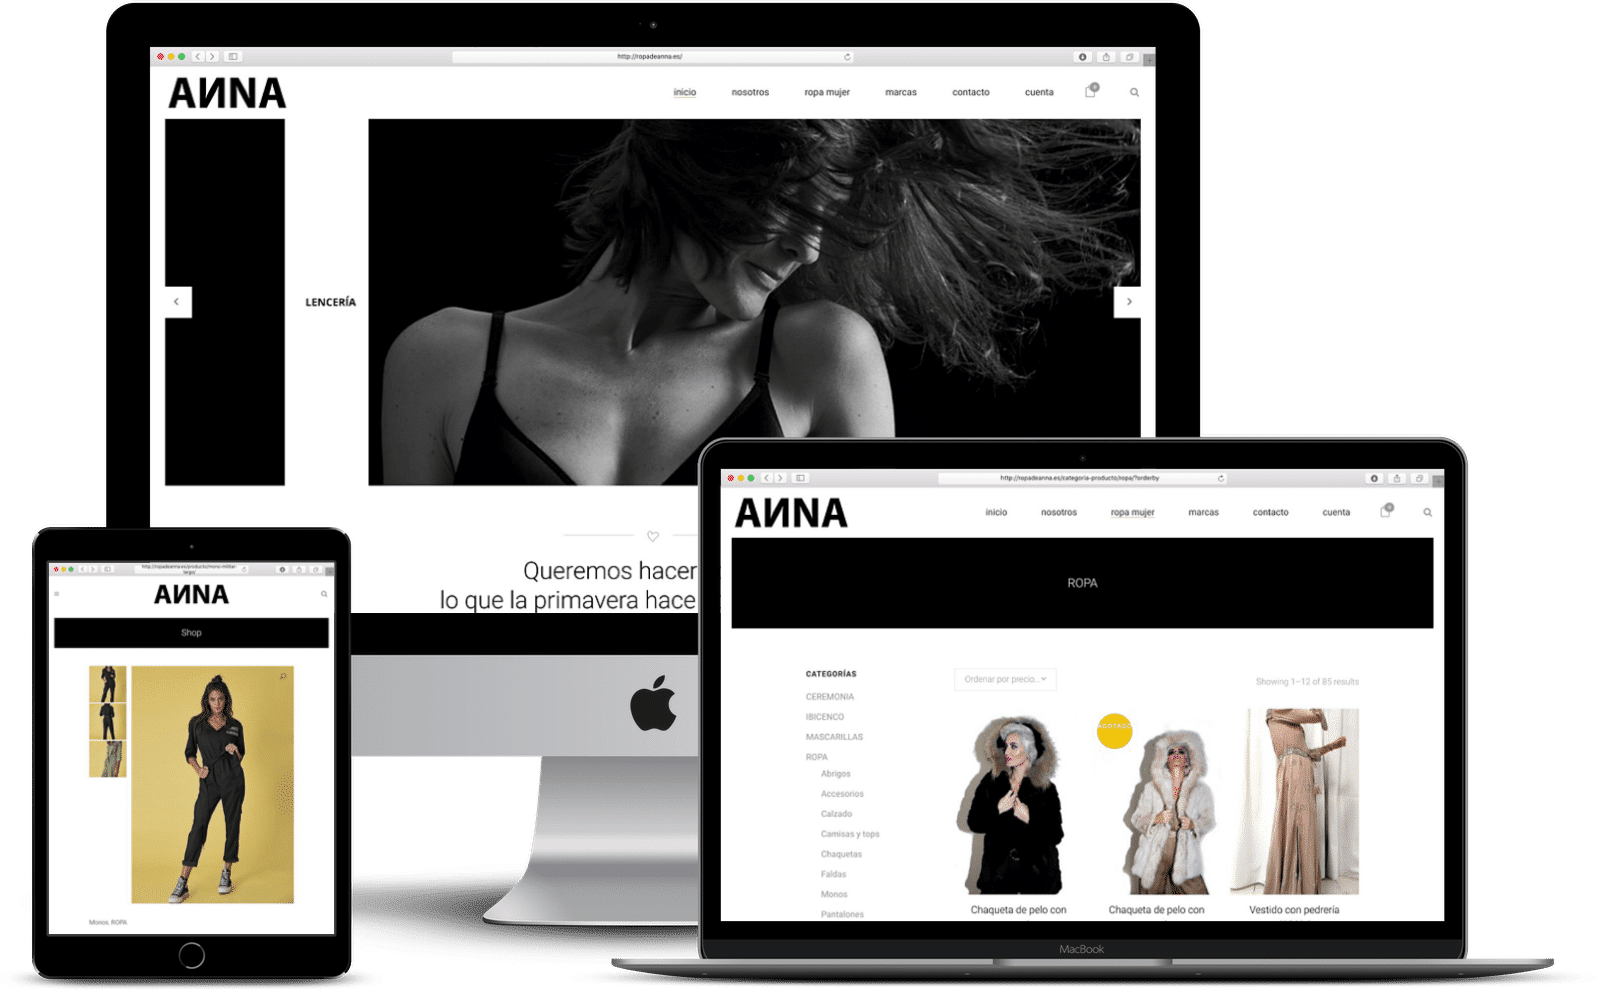 inova3 portfolio web ropa de anna 1 - inova3 - Marketing digital desde ourense